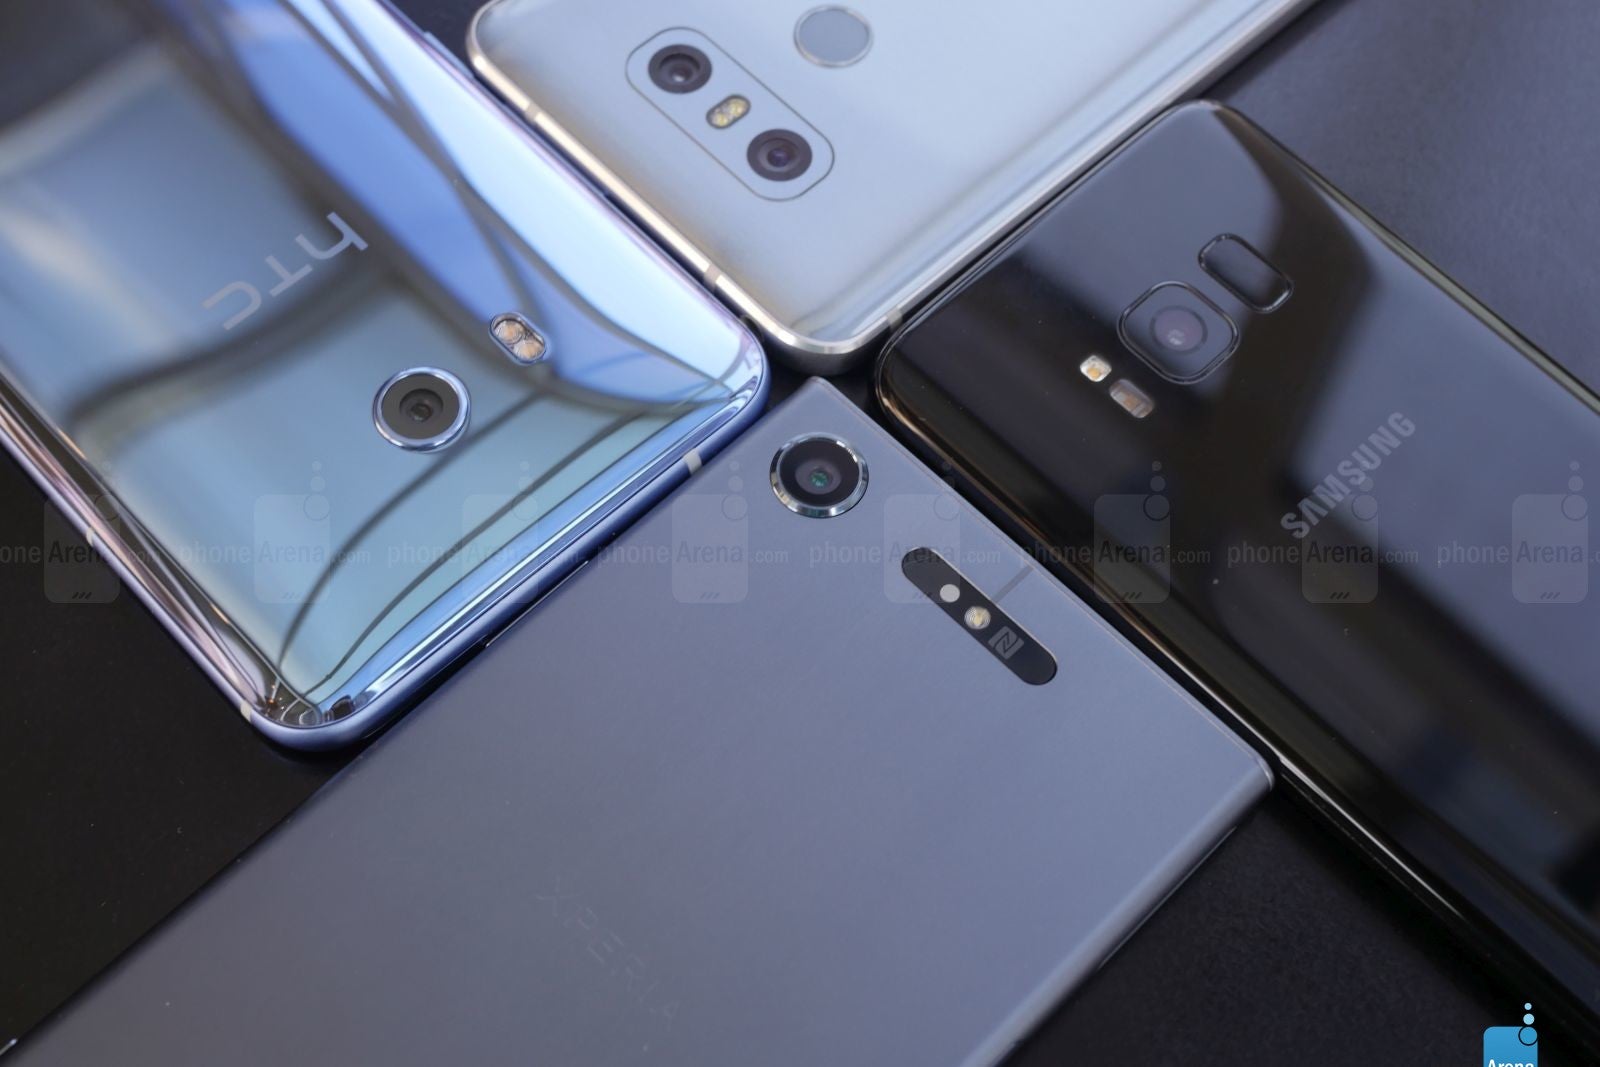 Xperia XZ1 vs Galaxy S8 vs LG G6 vs OnePlus 5: specs comparison